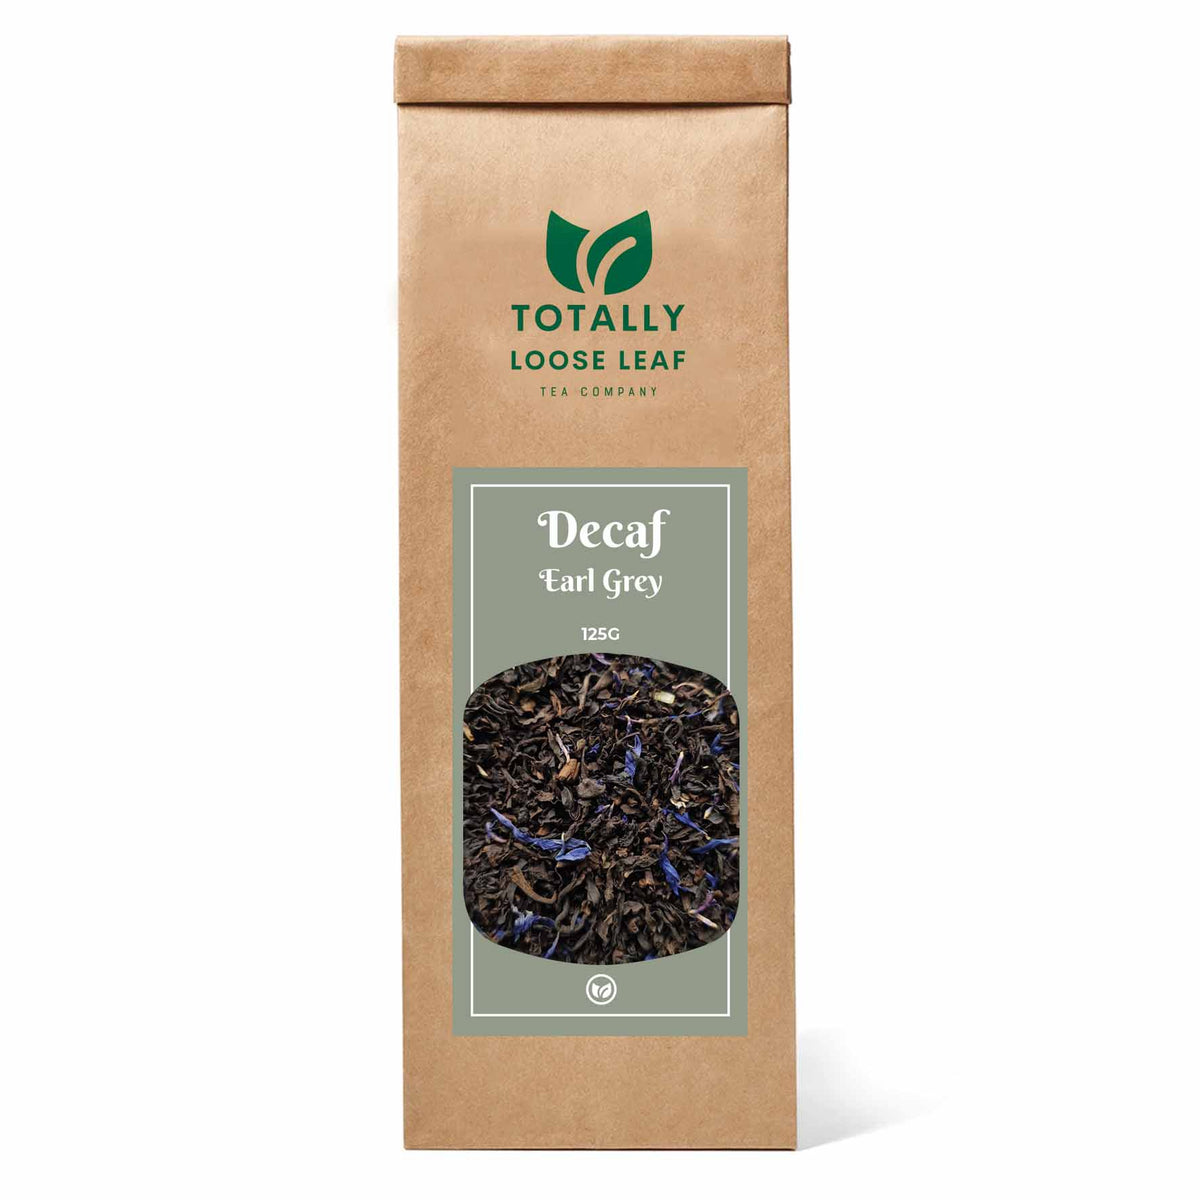 Decaf Earl Grey Breakfast Loose Leaf Tea - one pouch